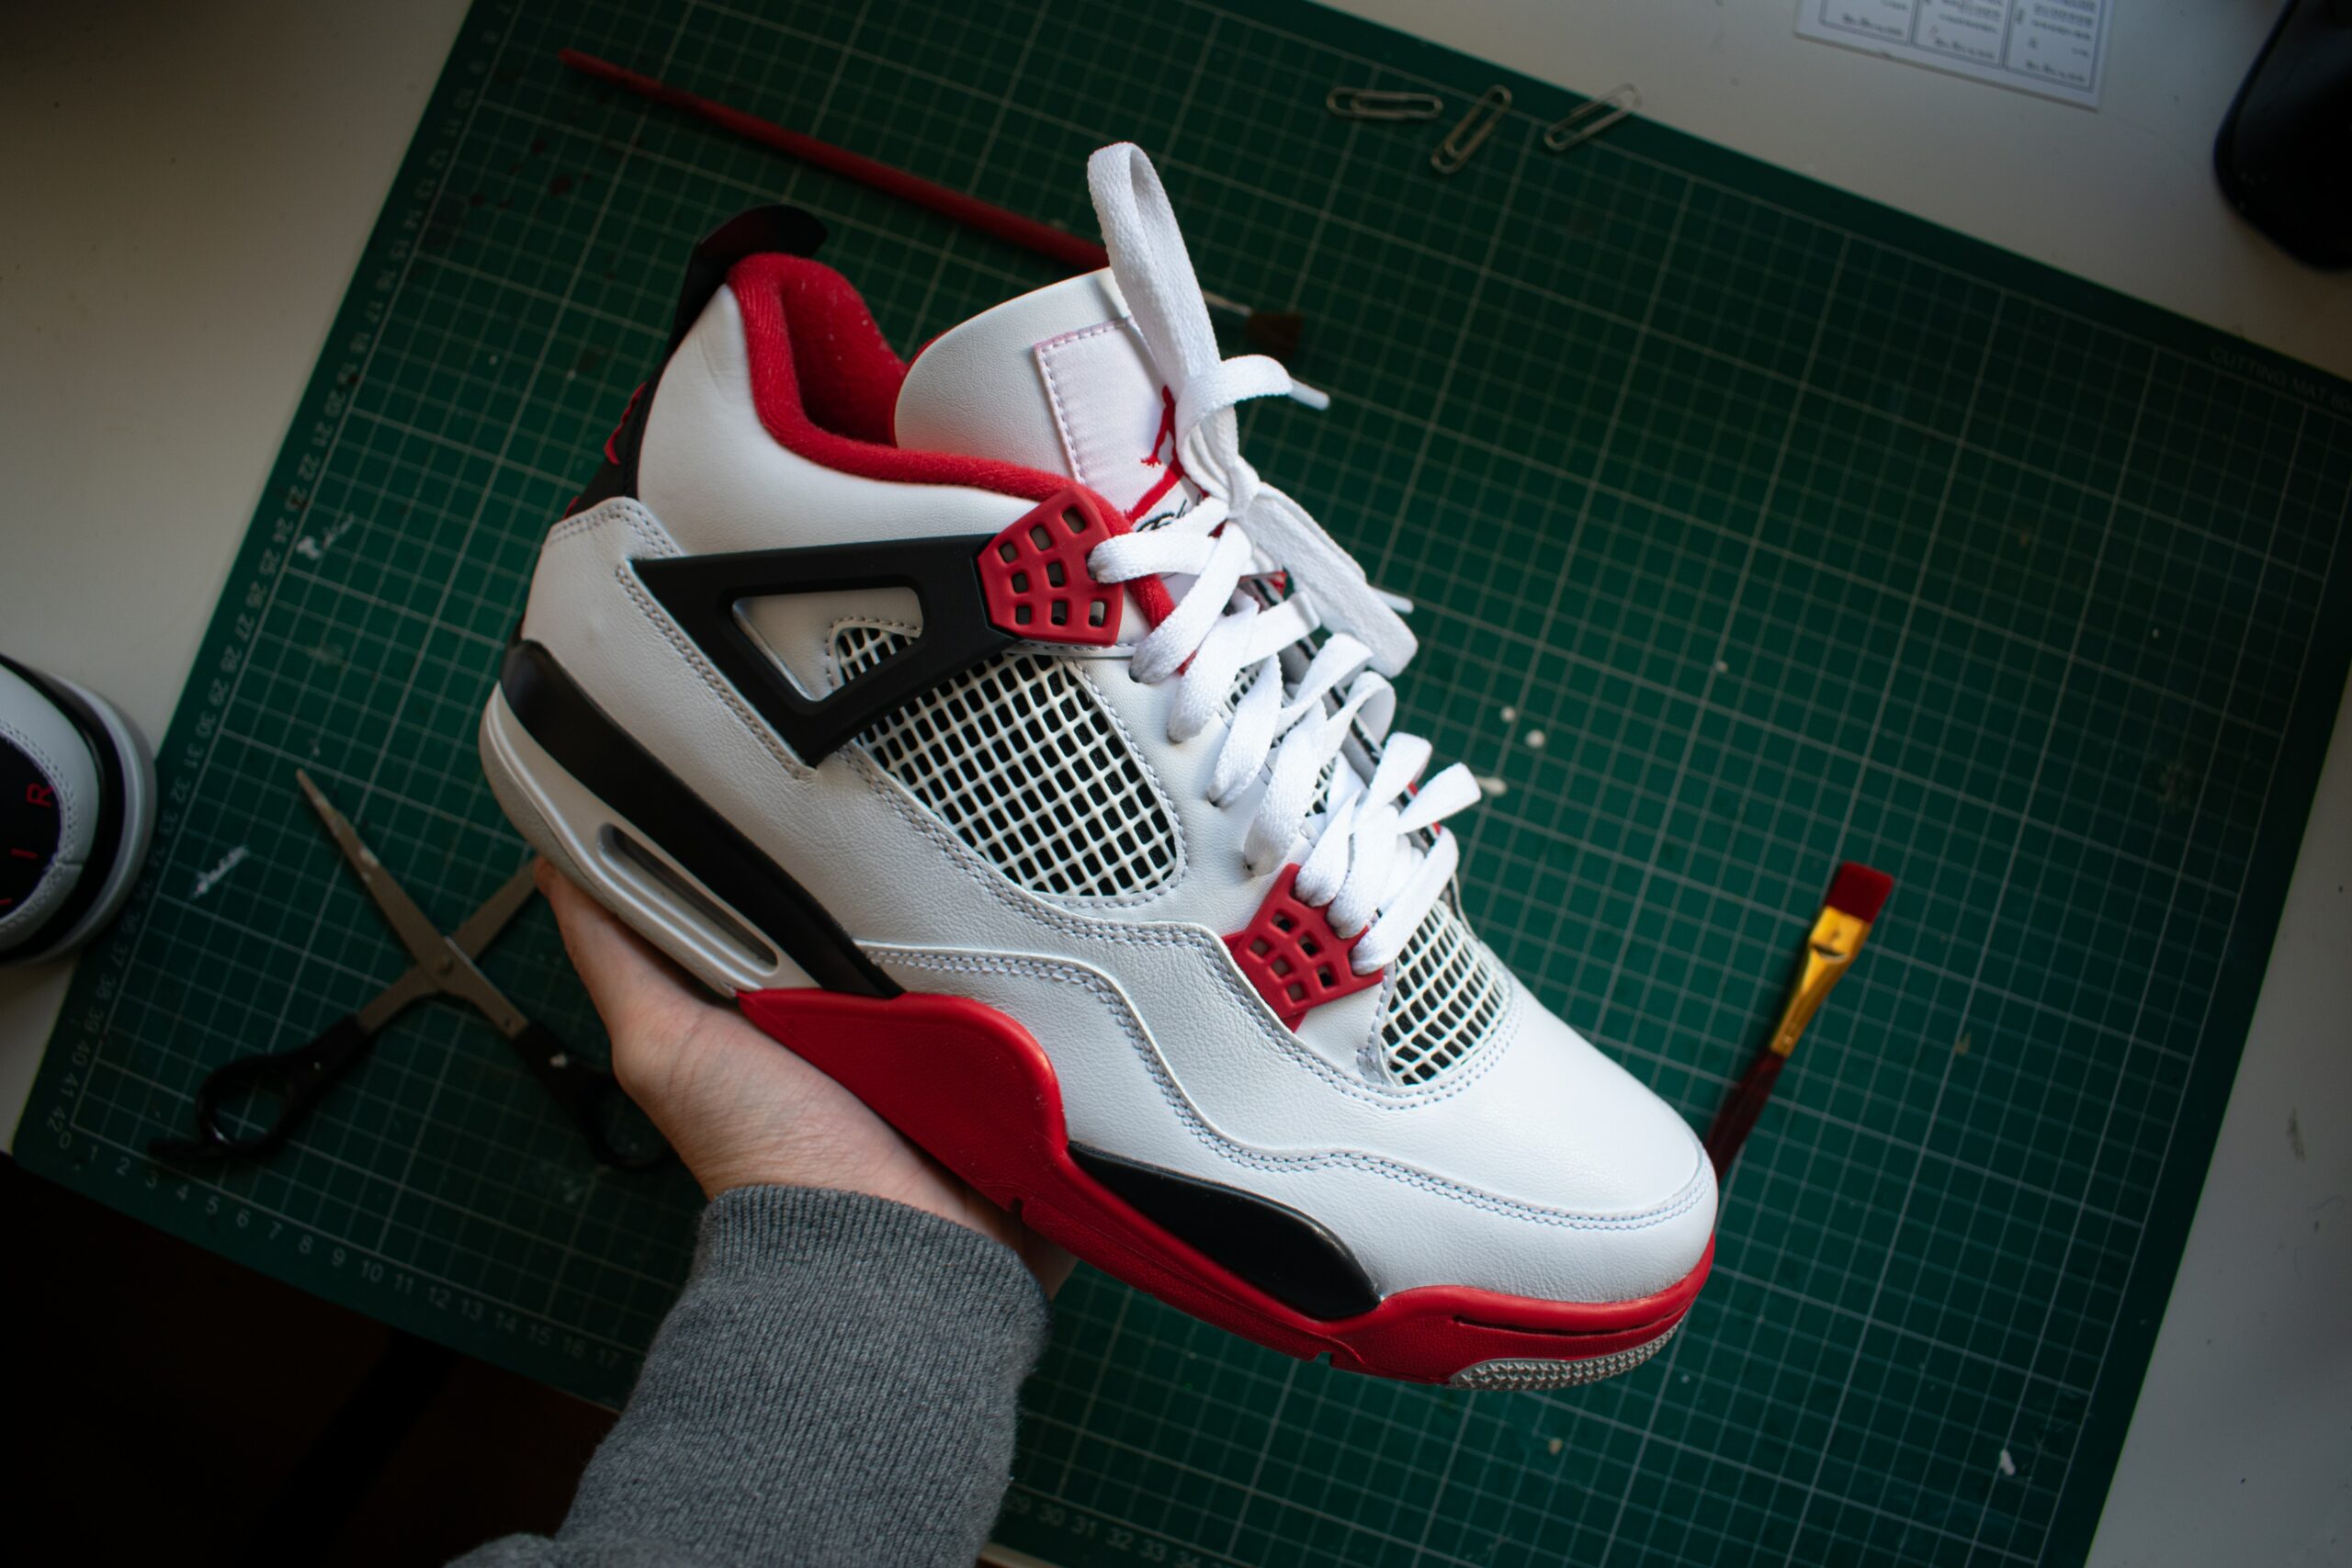 Nike Air Jordan 4: Kiedy kultowy but spotyka się z innymi markami i artystami